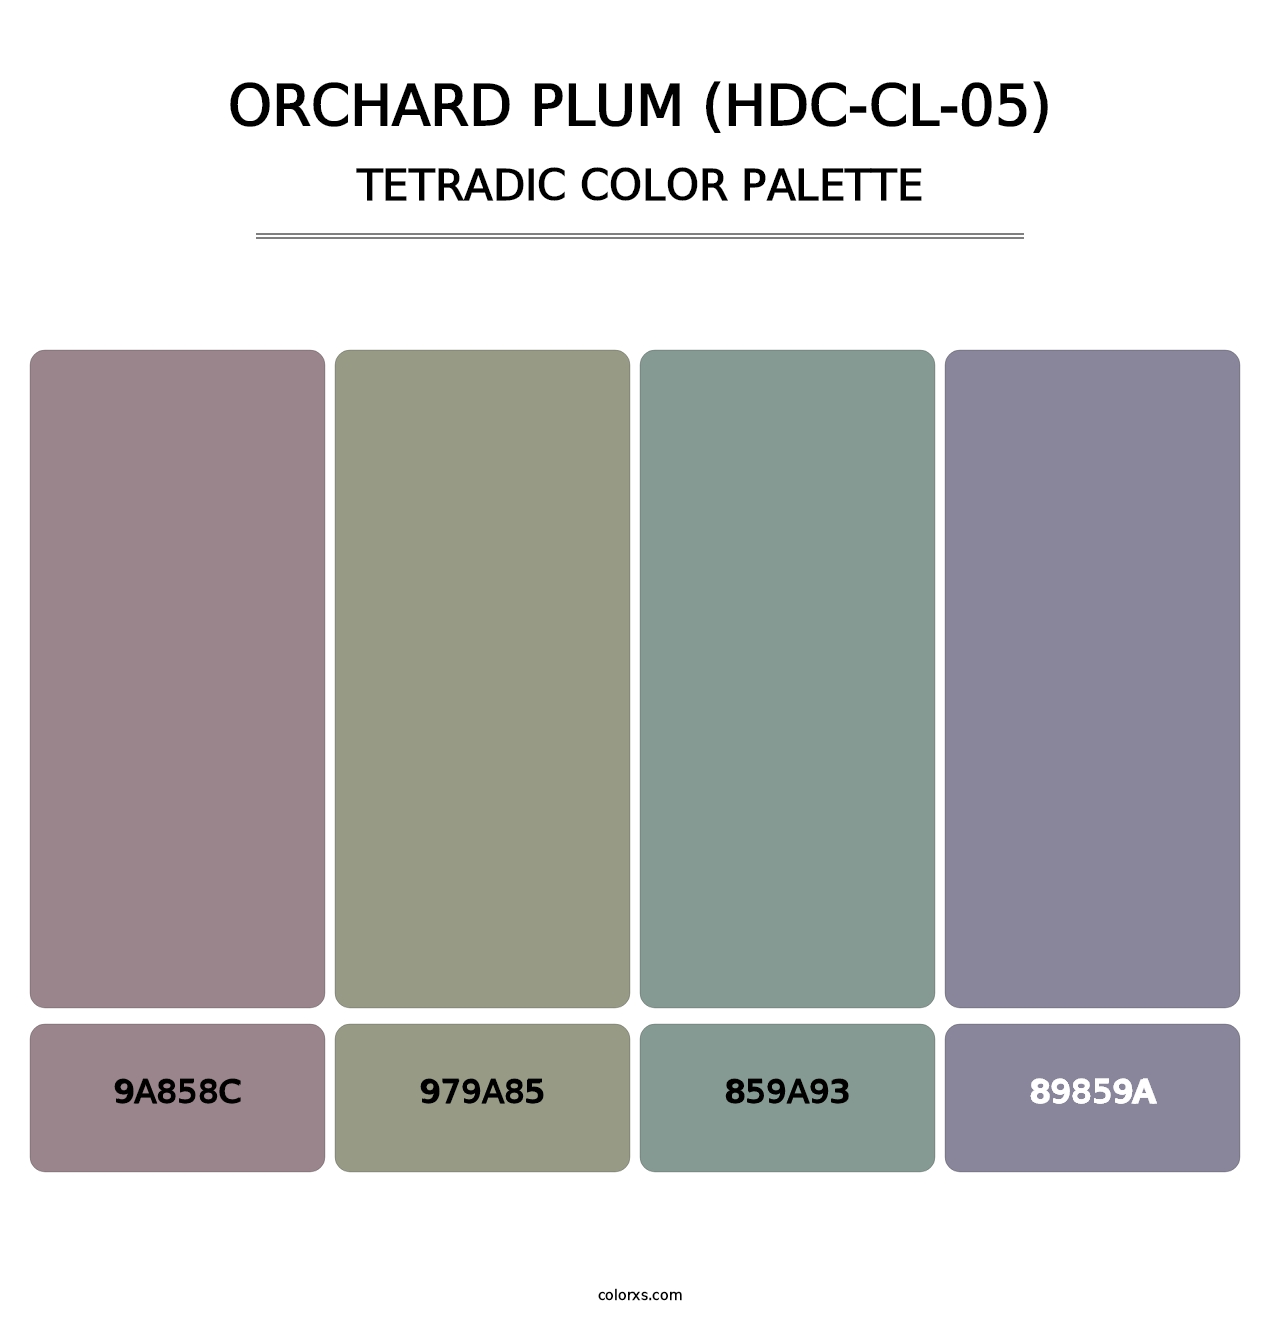 Orchard Plum (HDC-CL-05) - Tetradic Color Palette